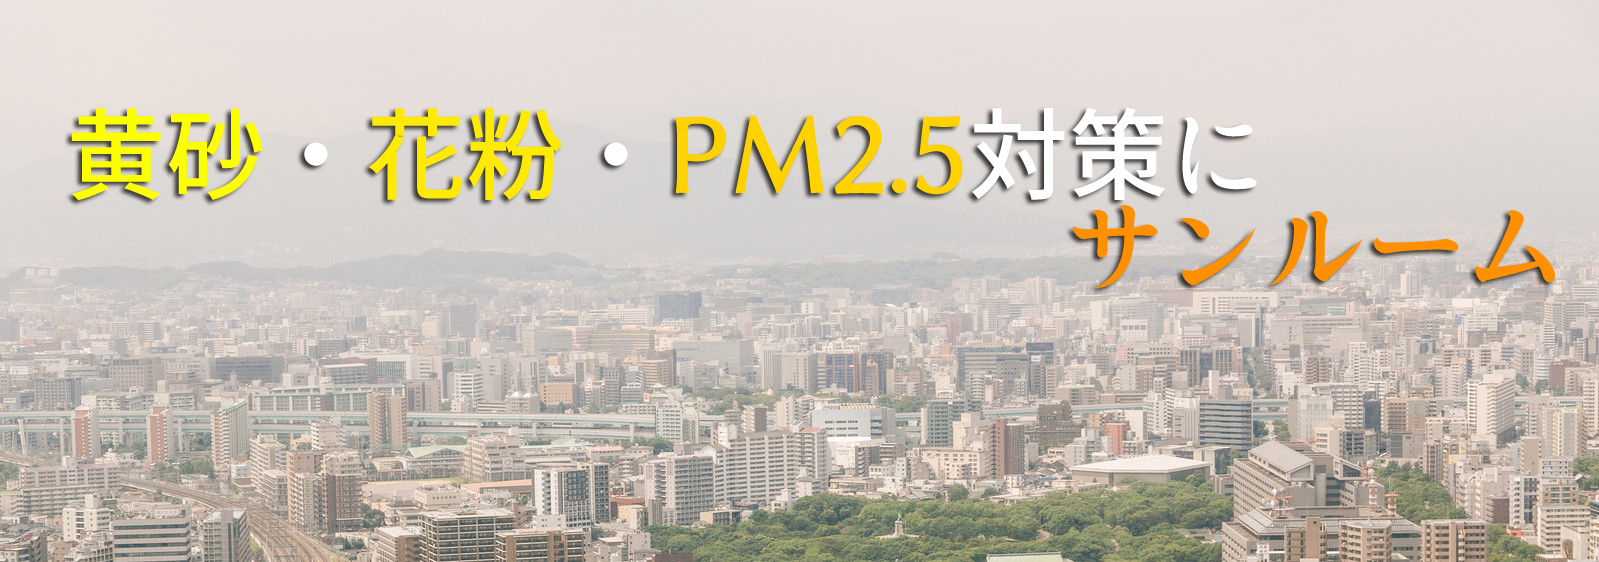 黄砂・花粉・PM2.5対策にサンルーム